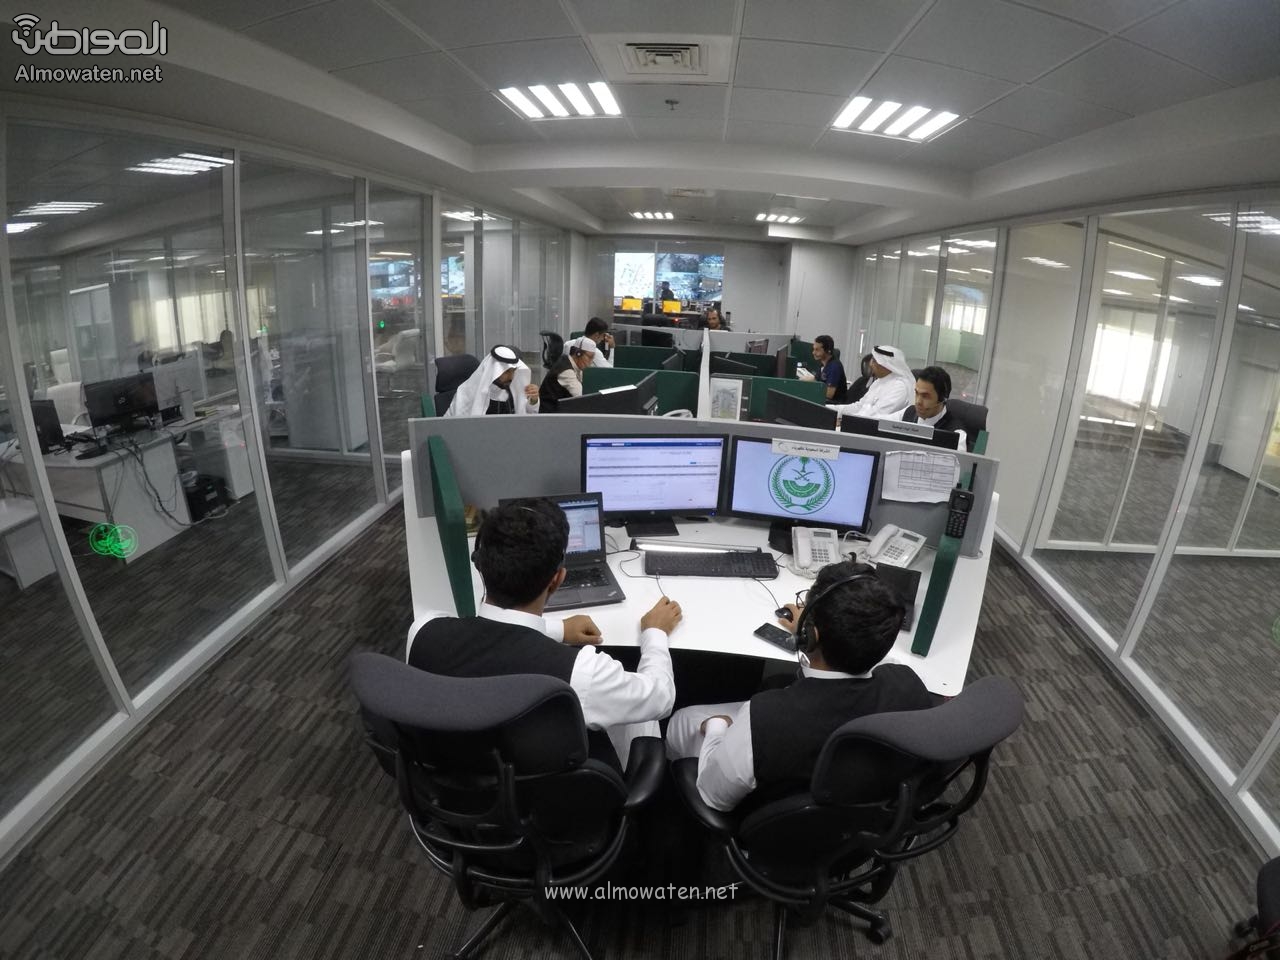 مركز العمليات الأمنية 911 .. قوى بشرية لخدمة الإنسان في مكة - المواطن